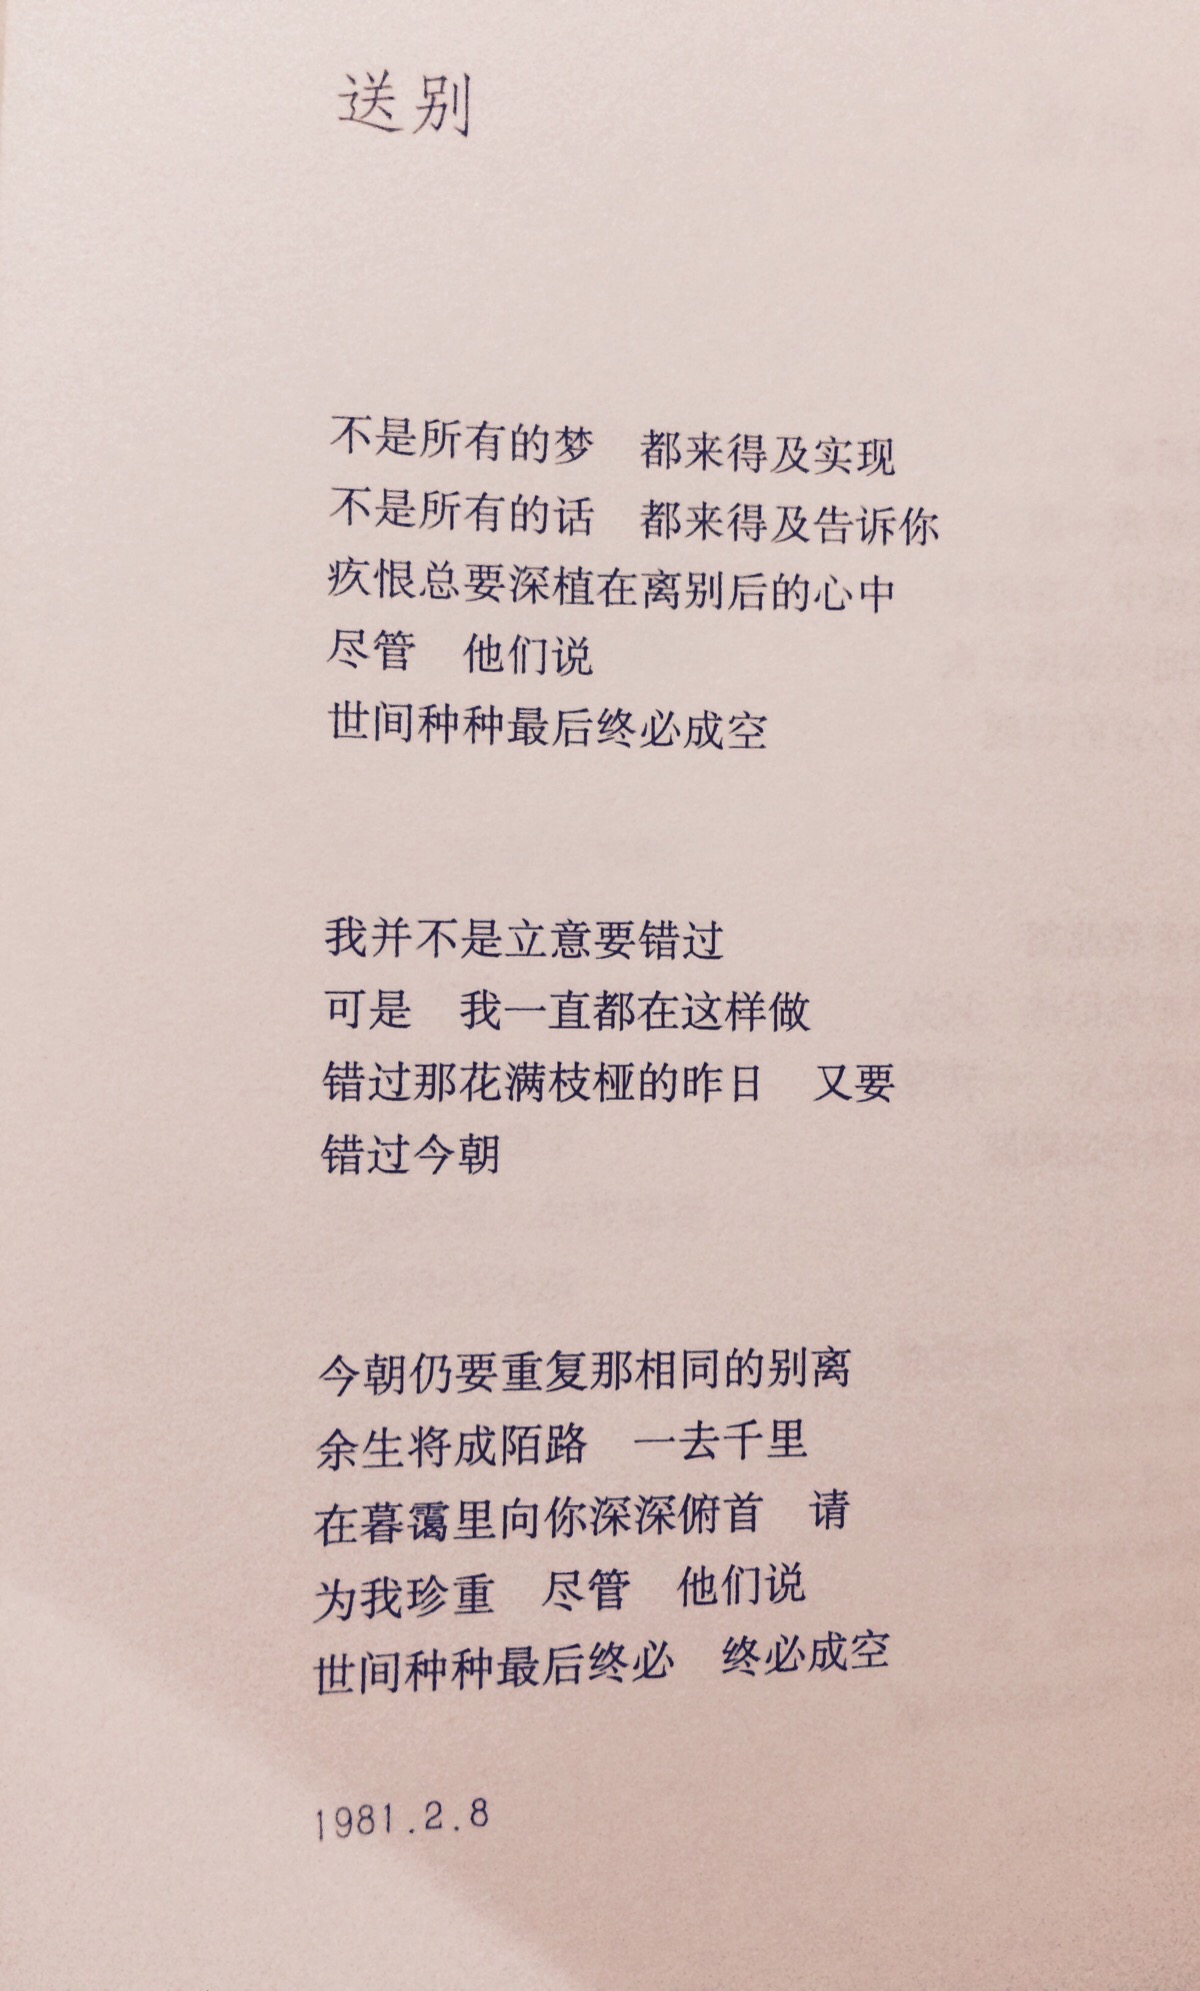 《七里香》席慕容…她的诗细腻情深,简单而意蕴无穷.